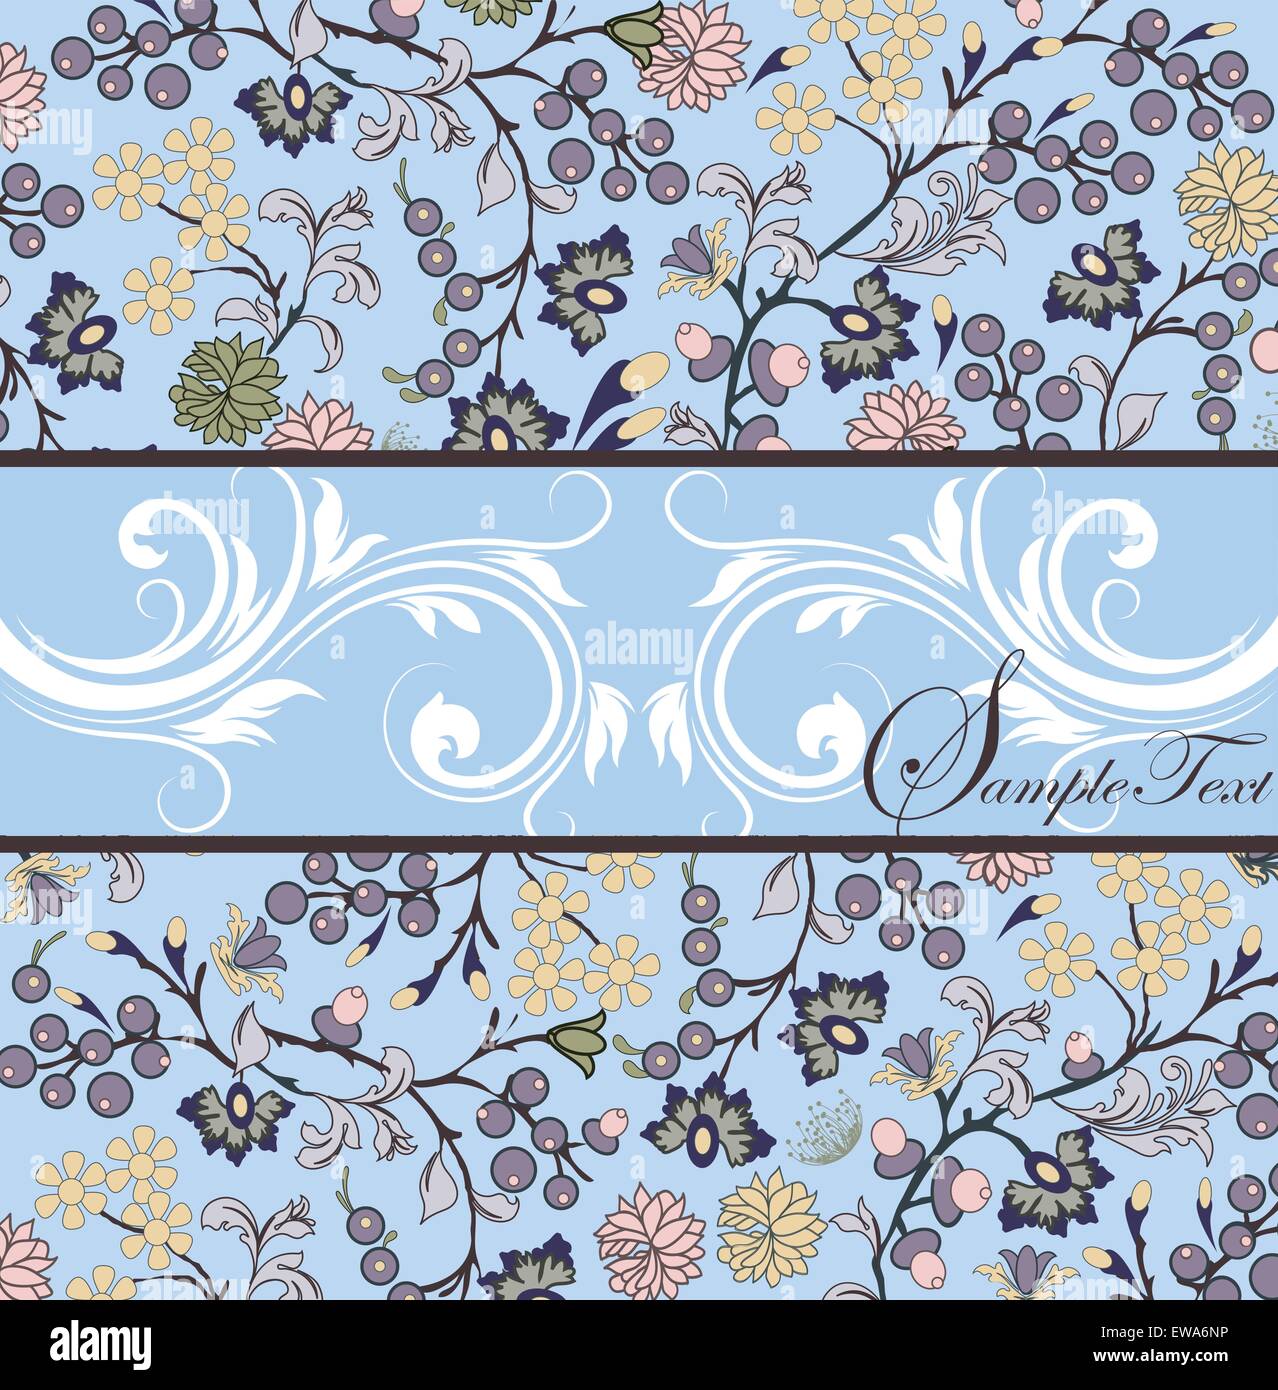 Vintage scheda invito ornato di eleganti astratta Retrò design floreale, multi-colore di fiori e foglie sul blu chiaro Illustrazione Vettoriale